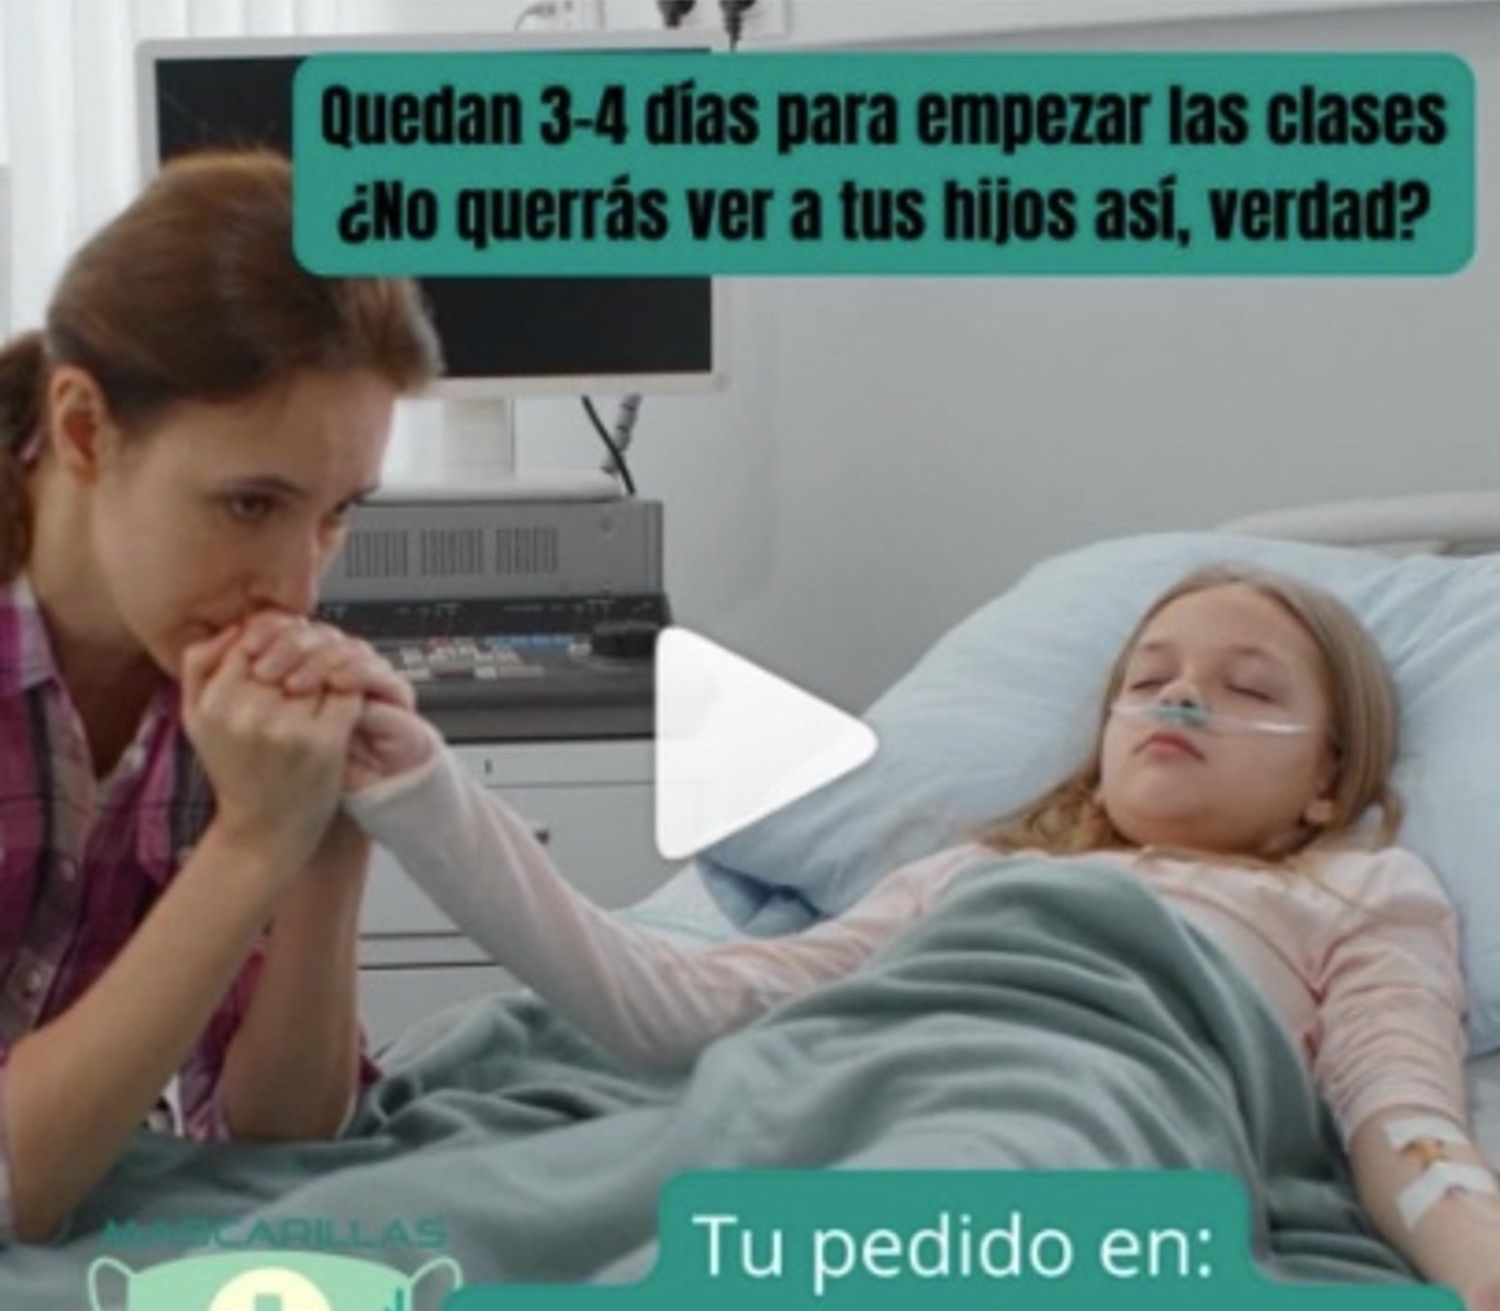 Polémica por un anuncio que usa duras imágenes de niños hospitalizados para vender mascarillas